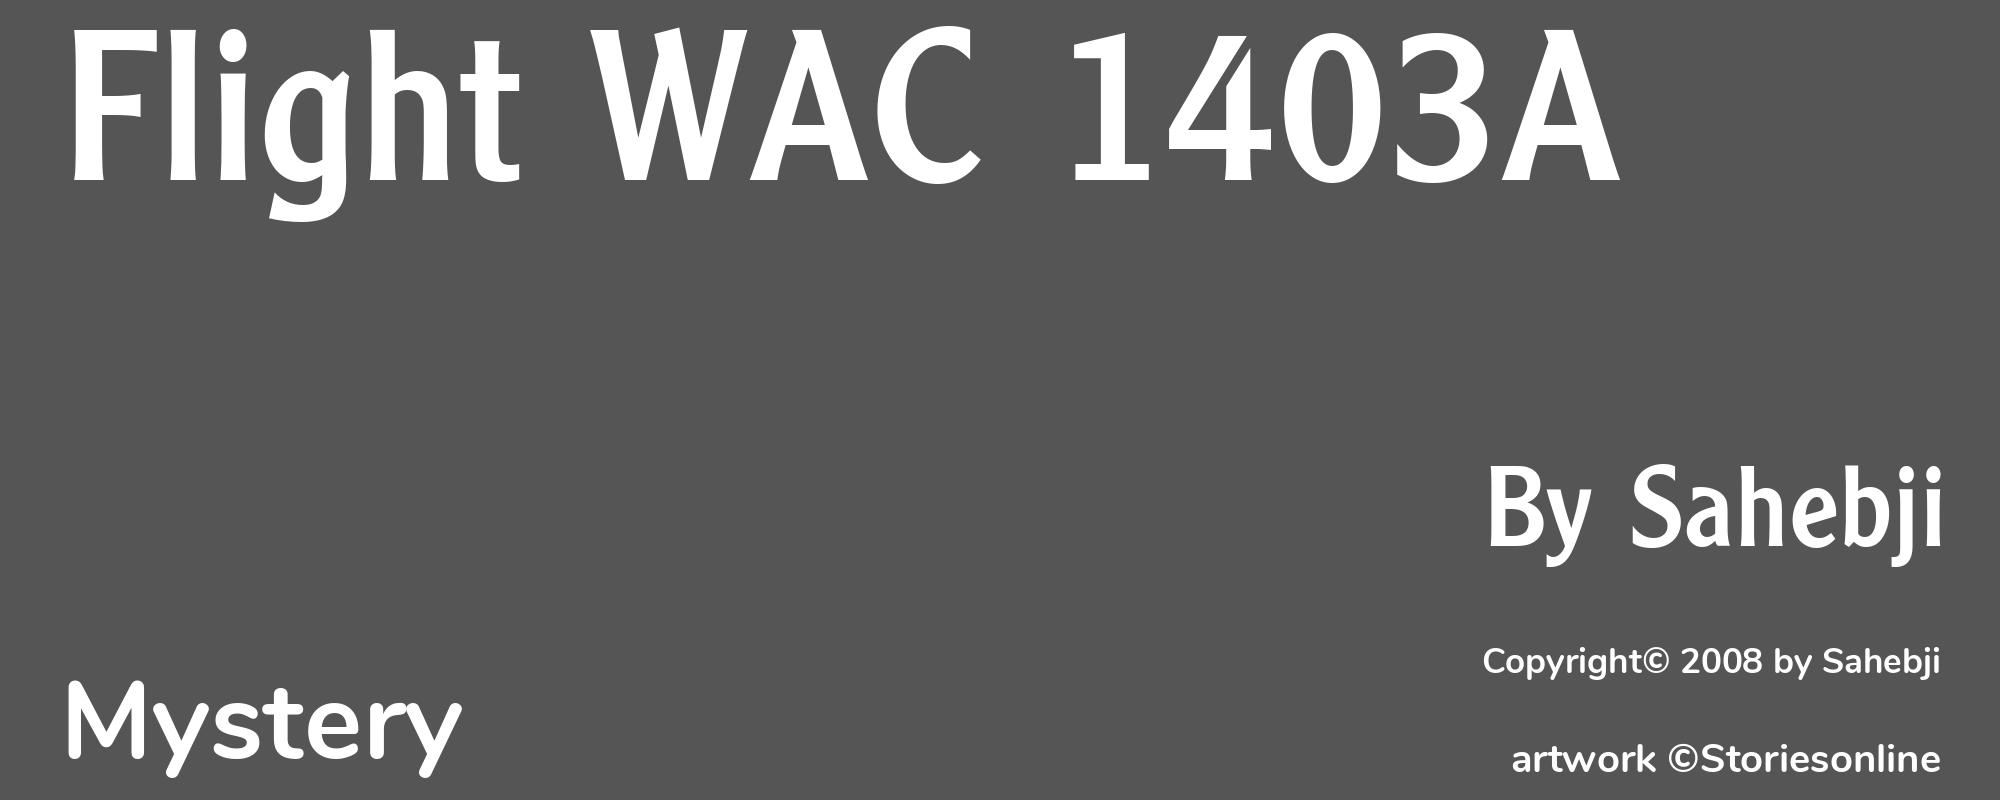 Flight WAC 1403A - Cover